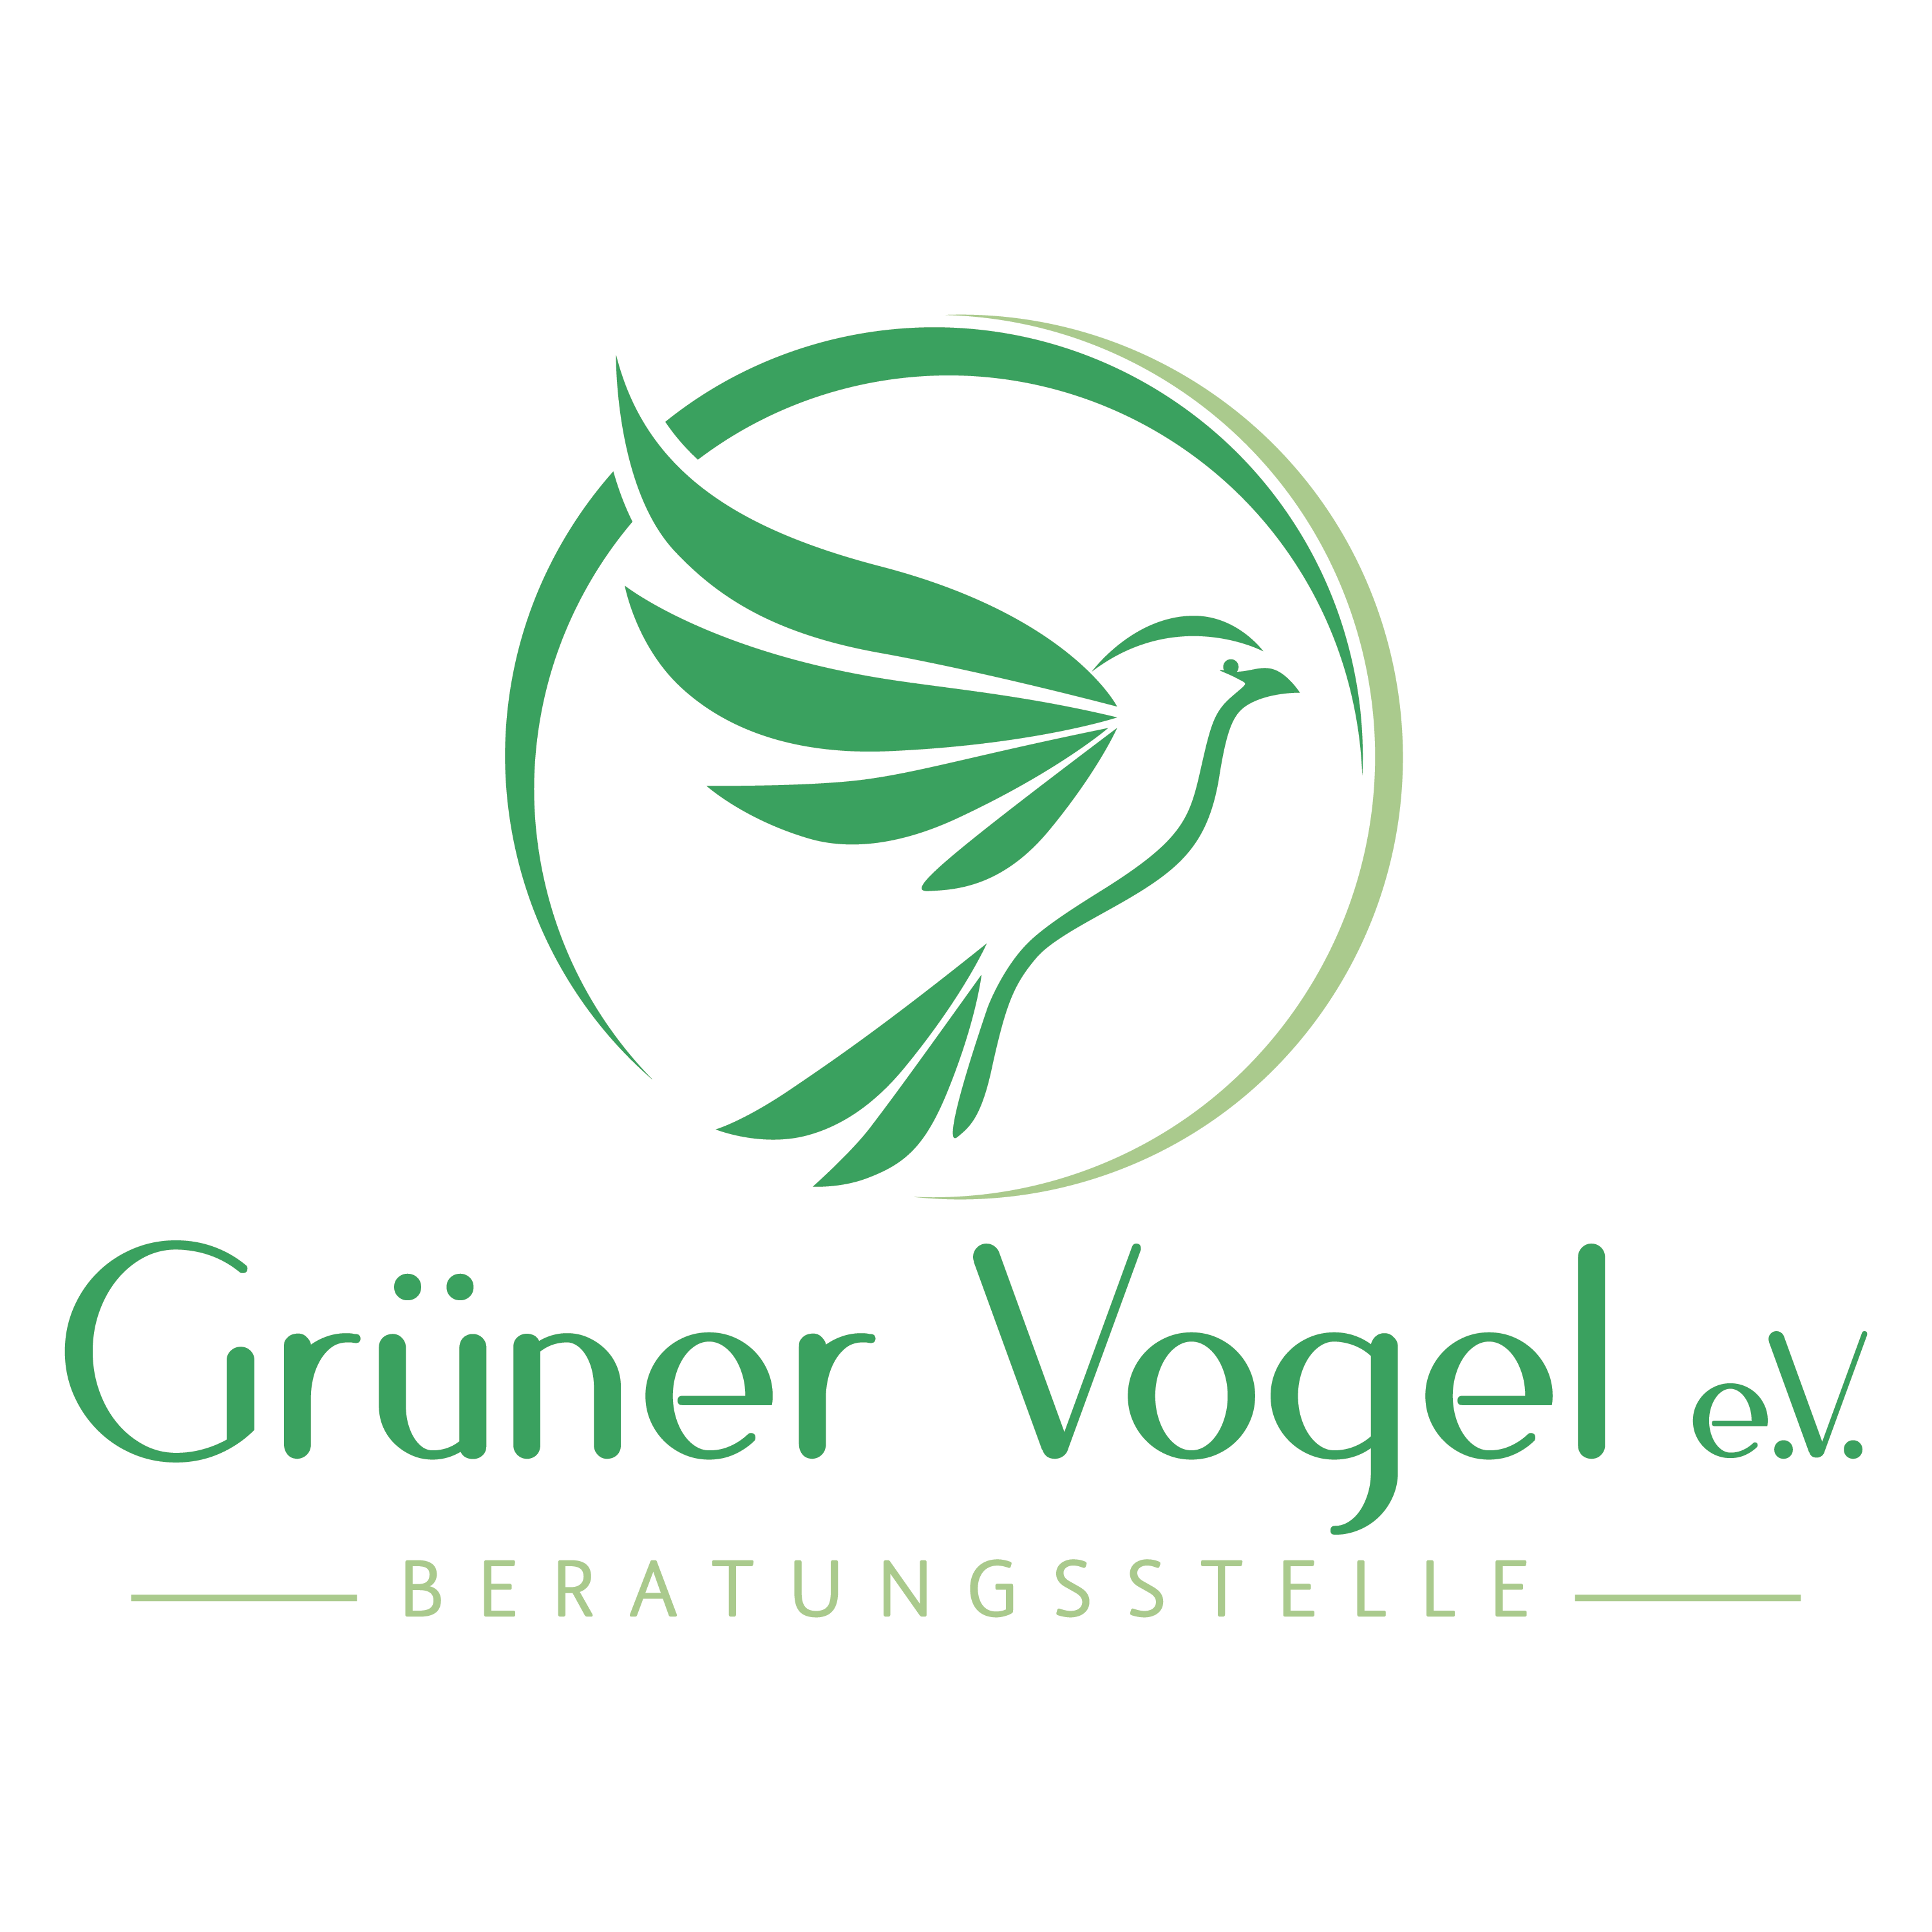 Grüner Vogel logo